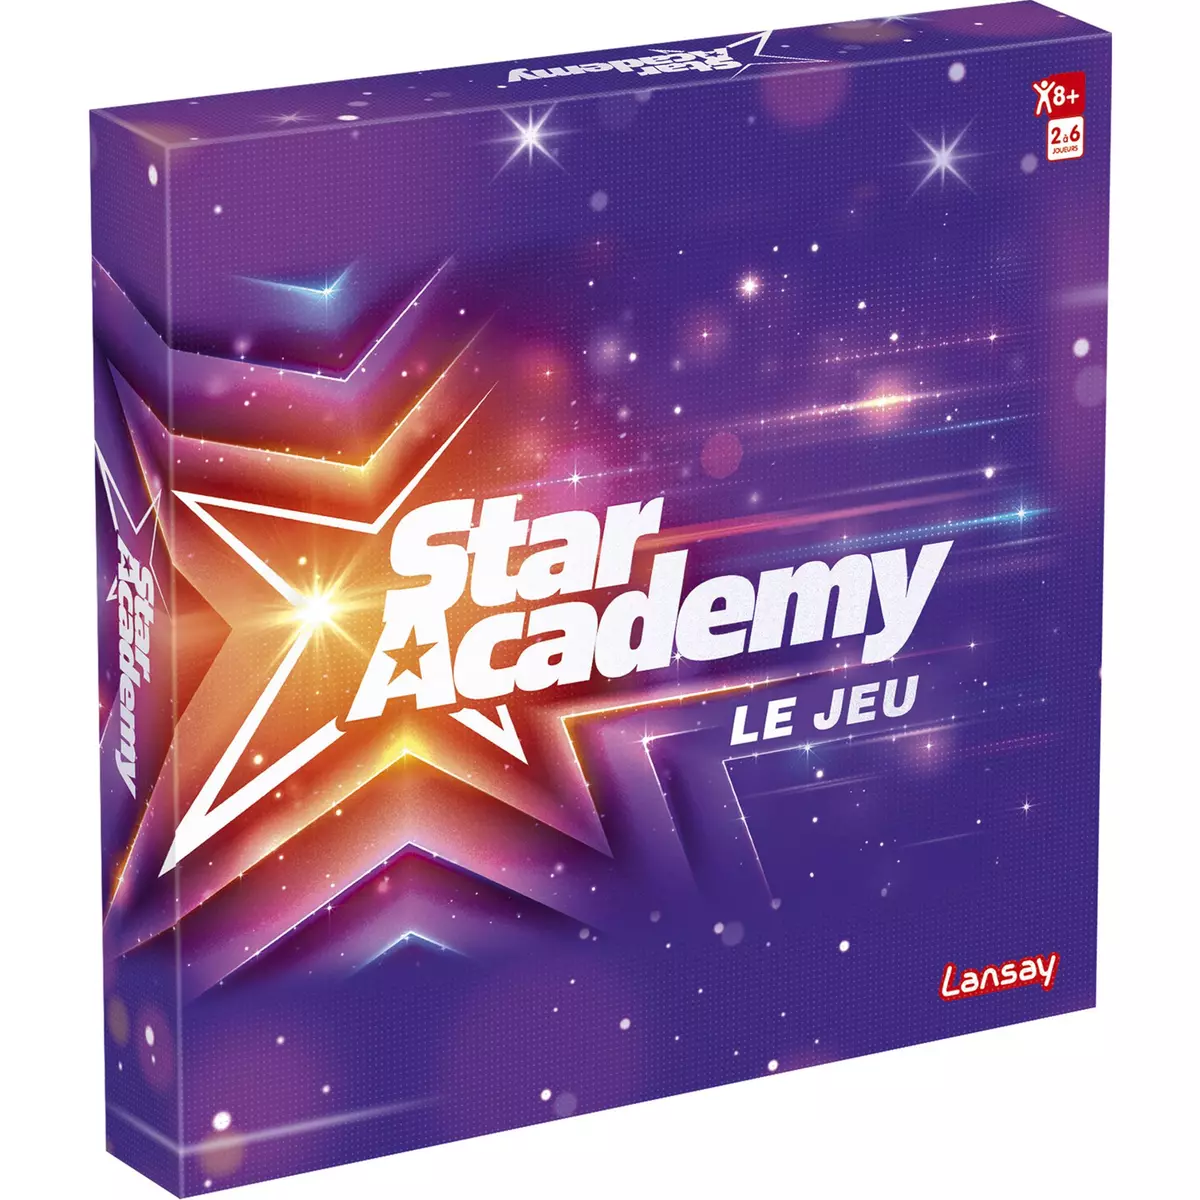 LANSAY Jeu Star Academy